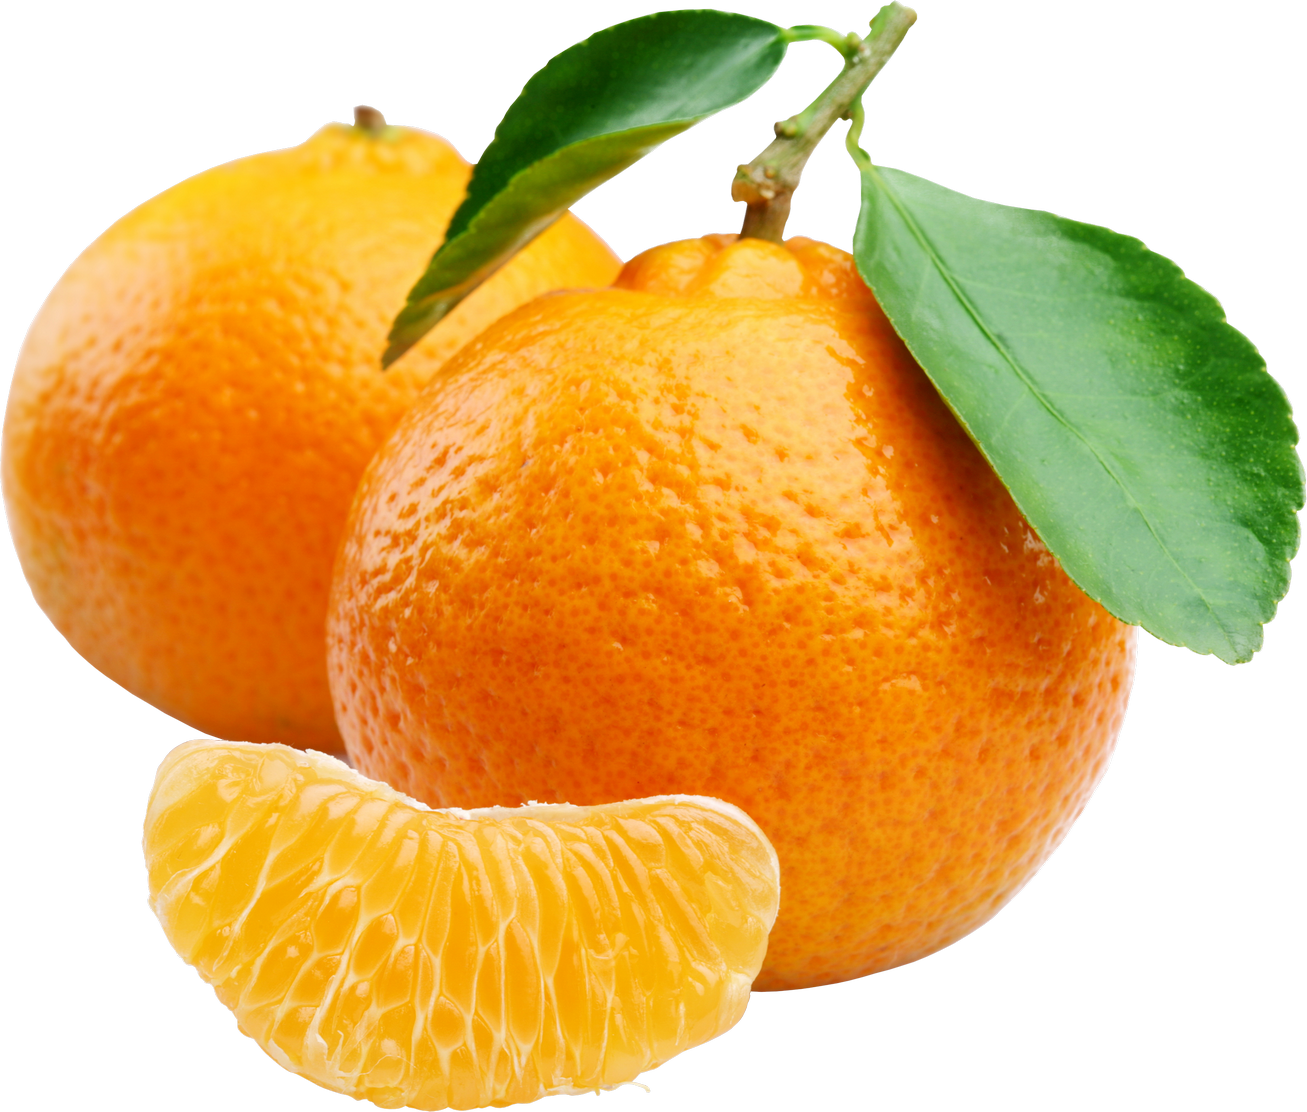 Oranges Background PNG Image